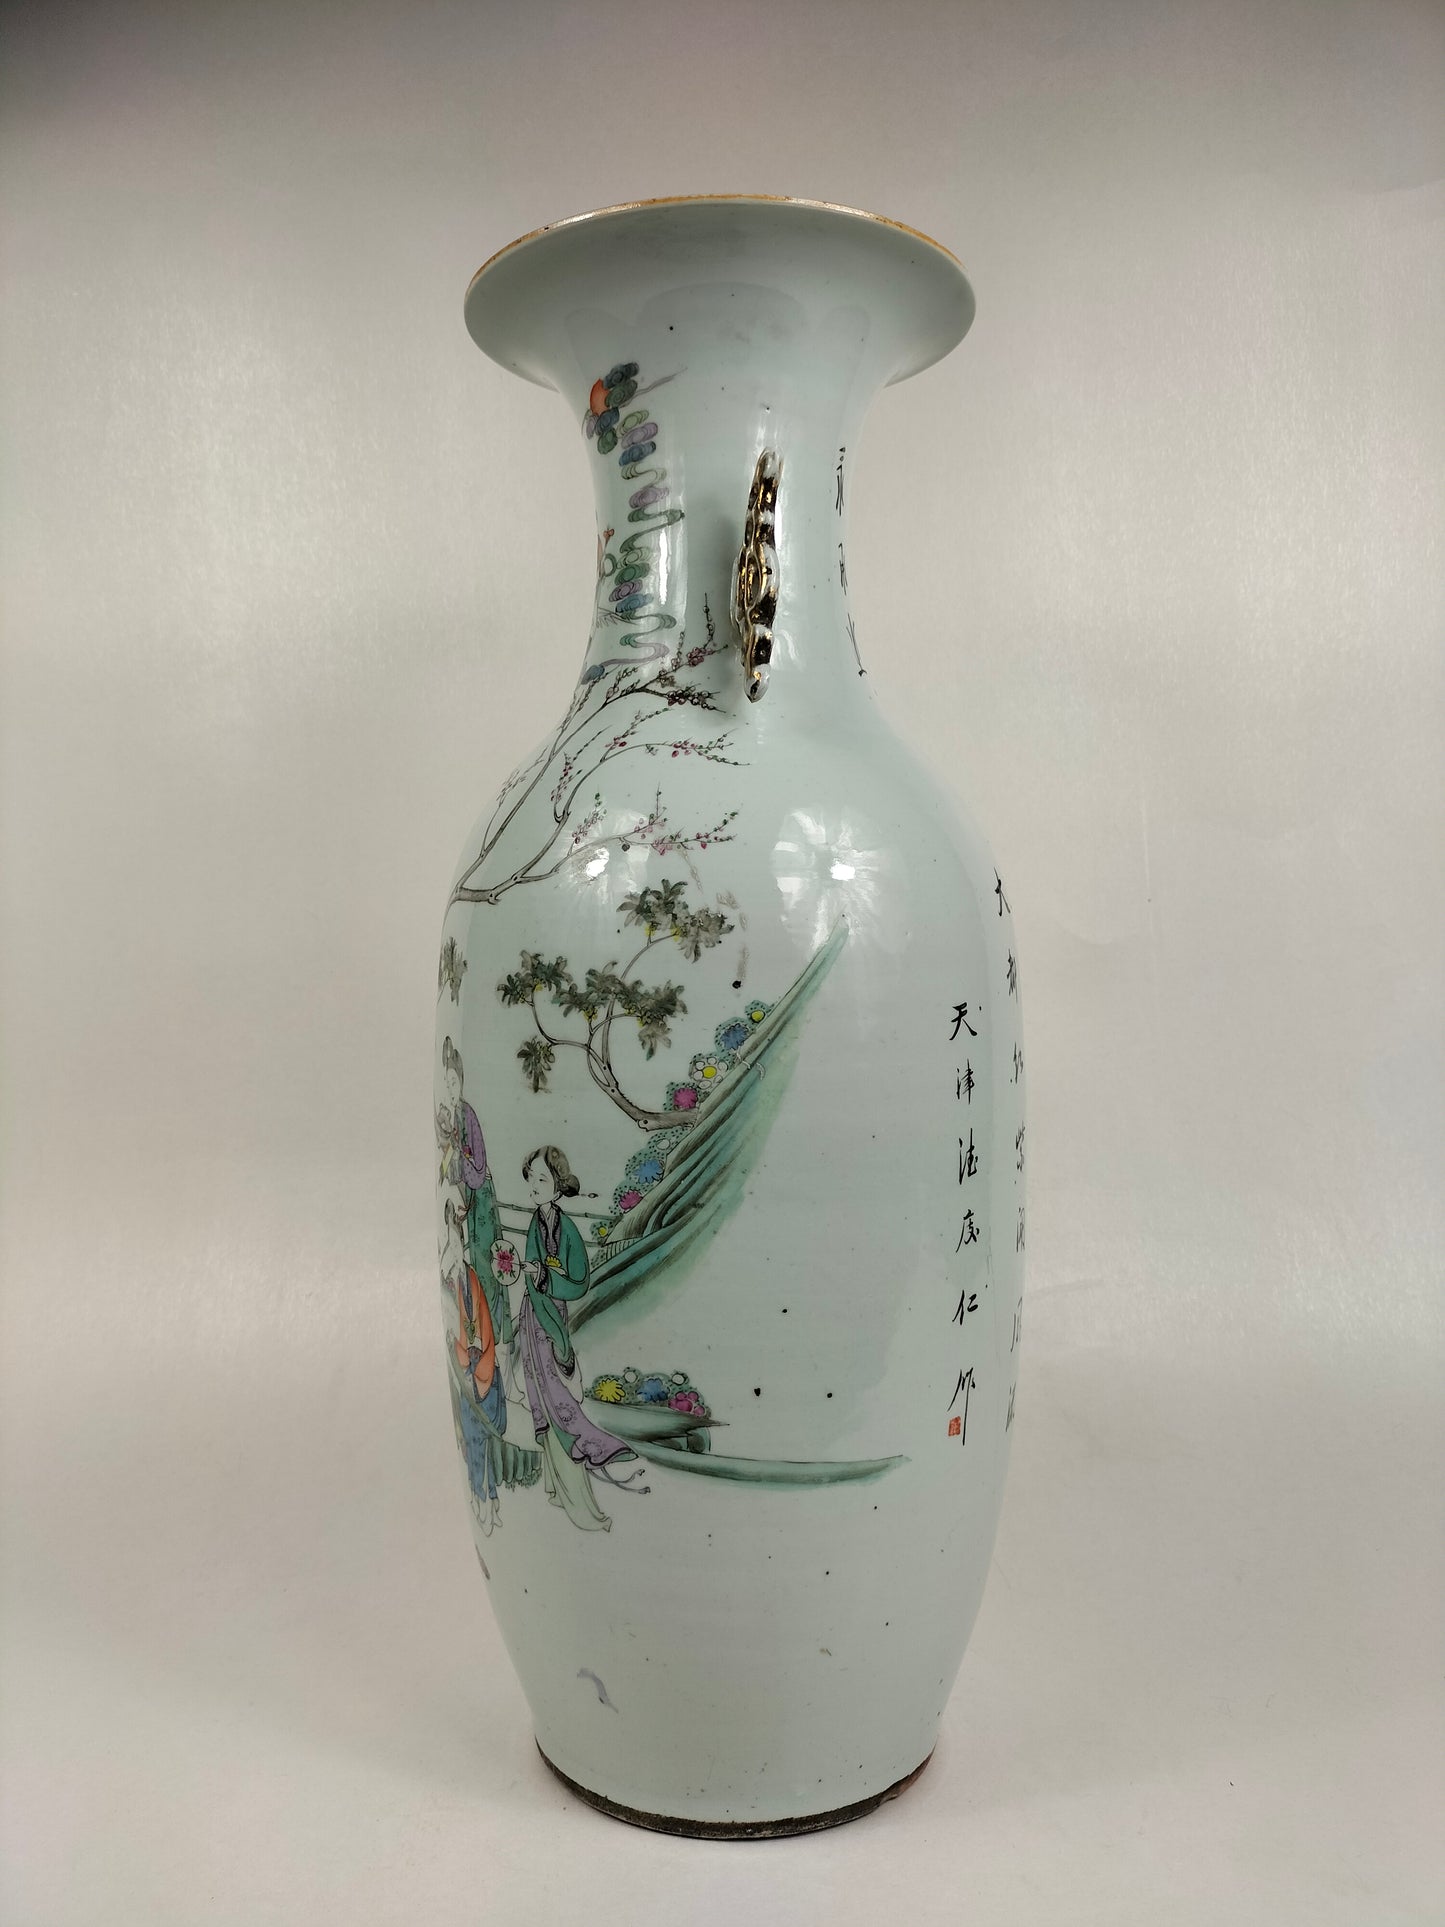 Grande vaso chinês antigo com cena de jardim / Período da República (1912-1949)